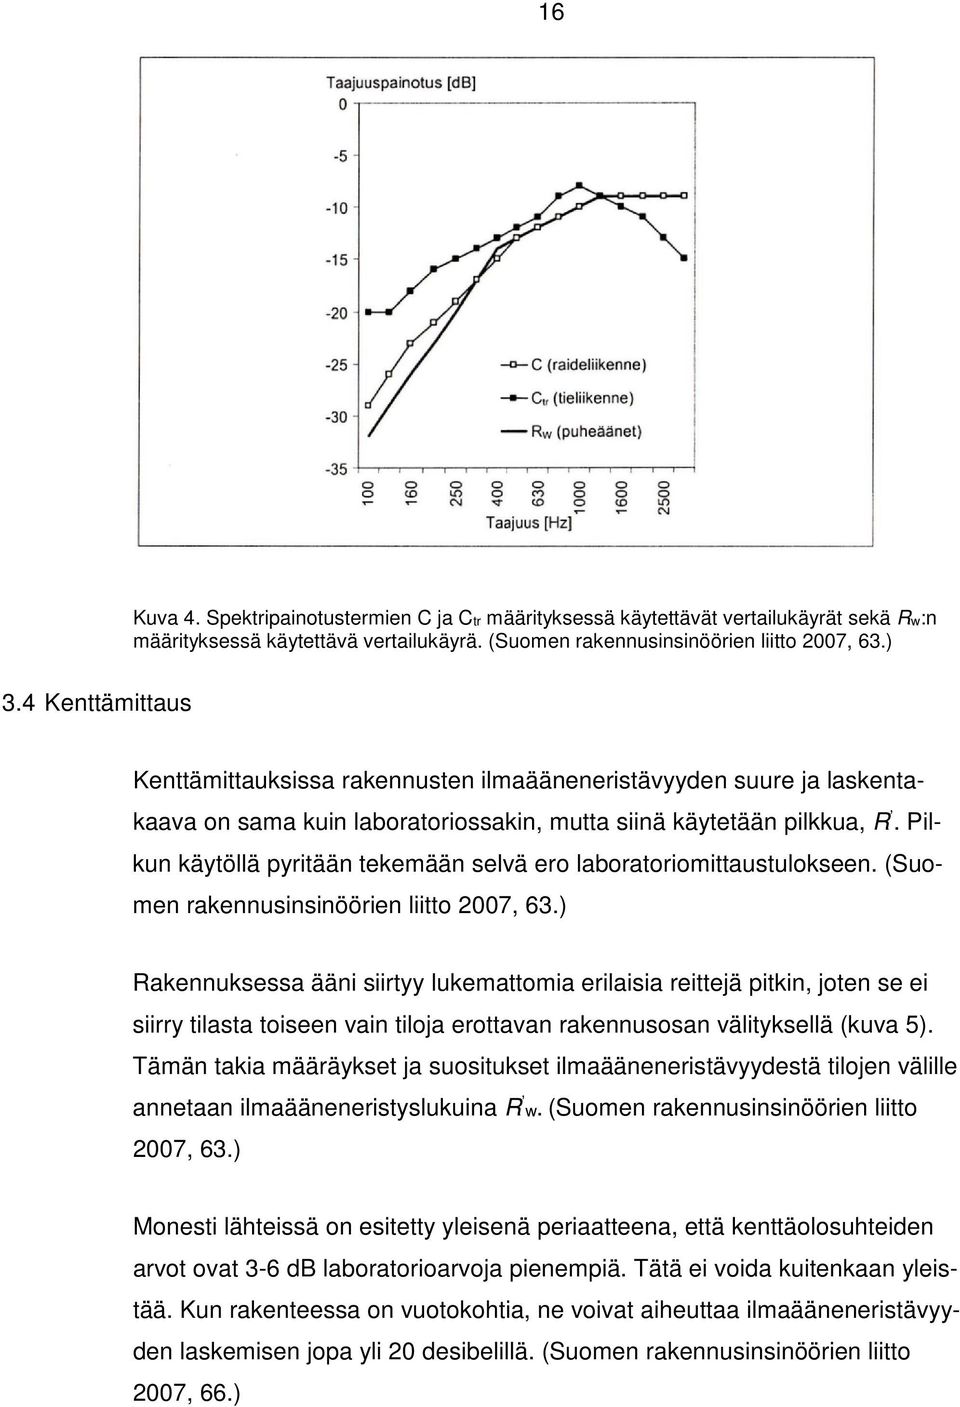 Pilkun käytöllä pyritään tekemään selvä ero laboratoriomittaustulokseen. (Suomen rakennusinsinöörien liitto 2007, 63.